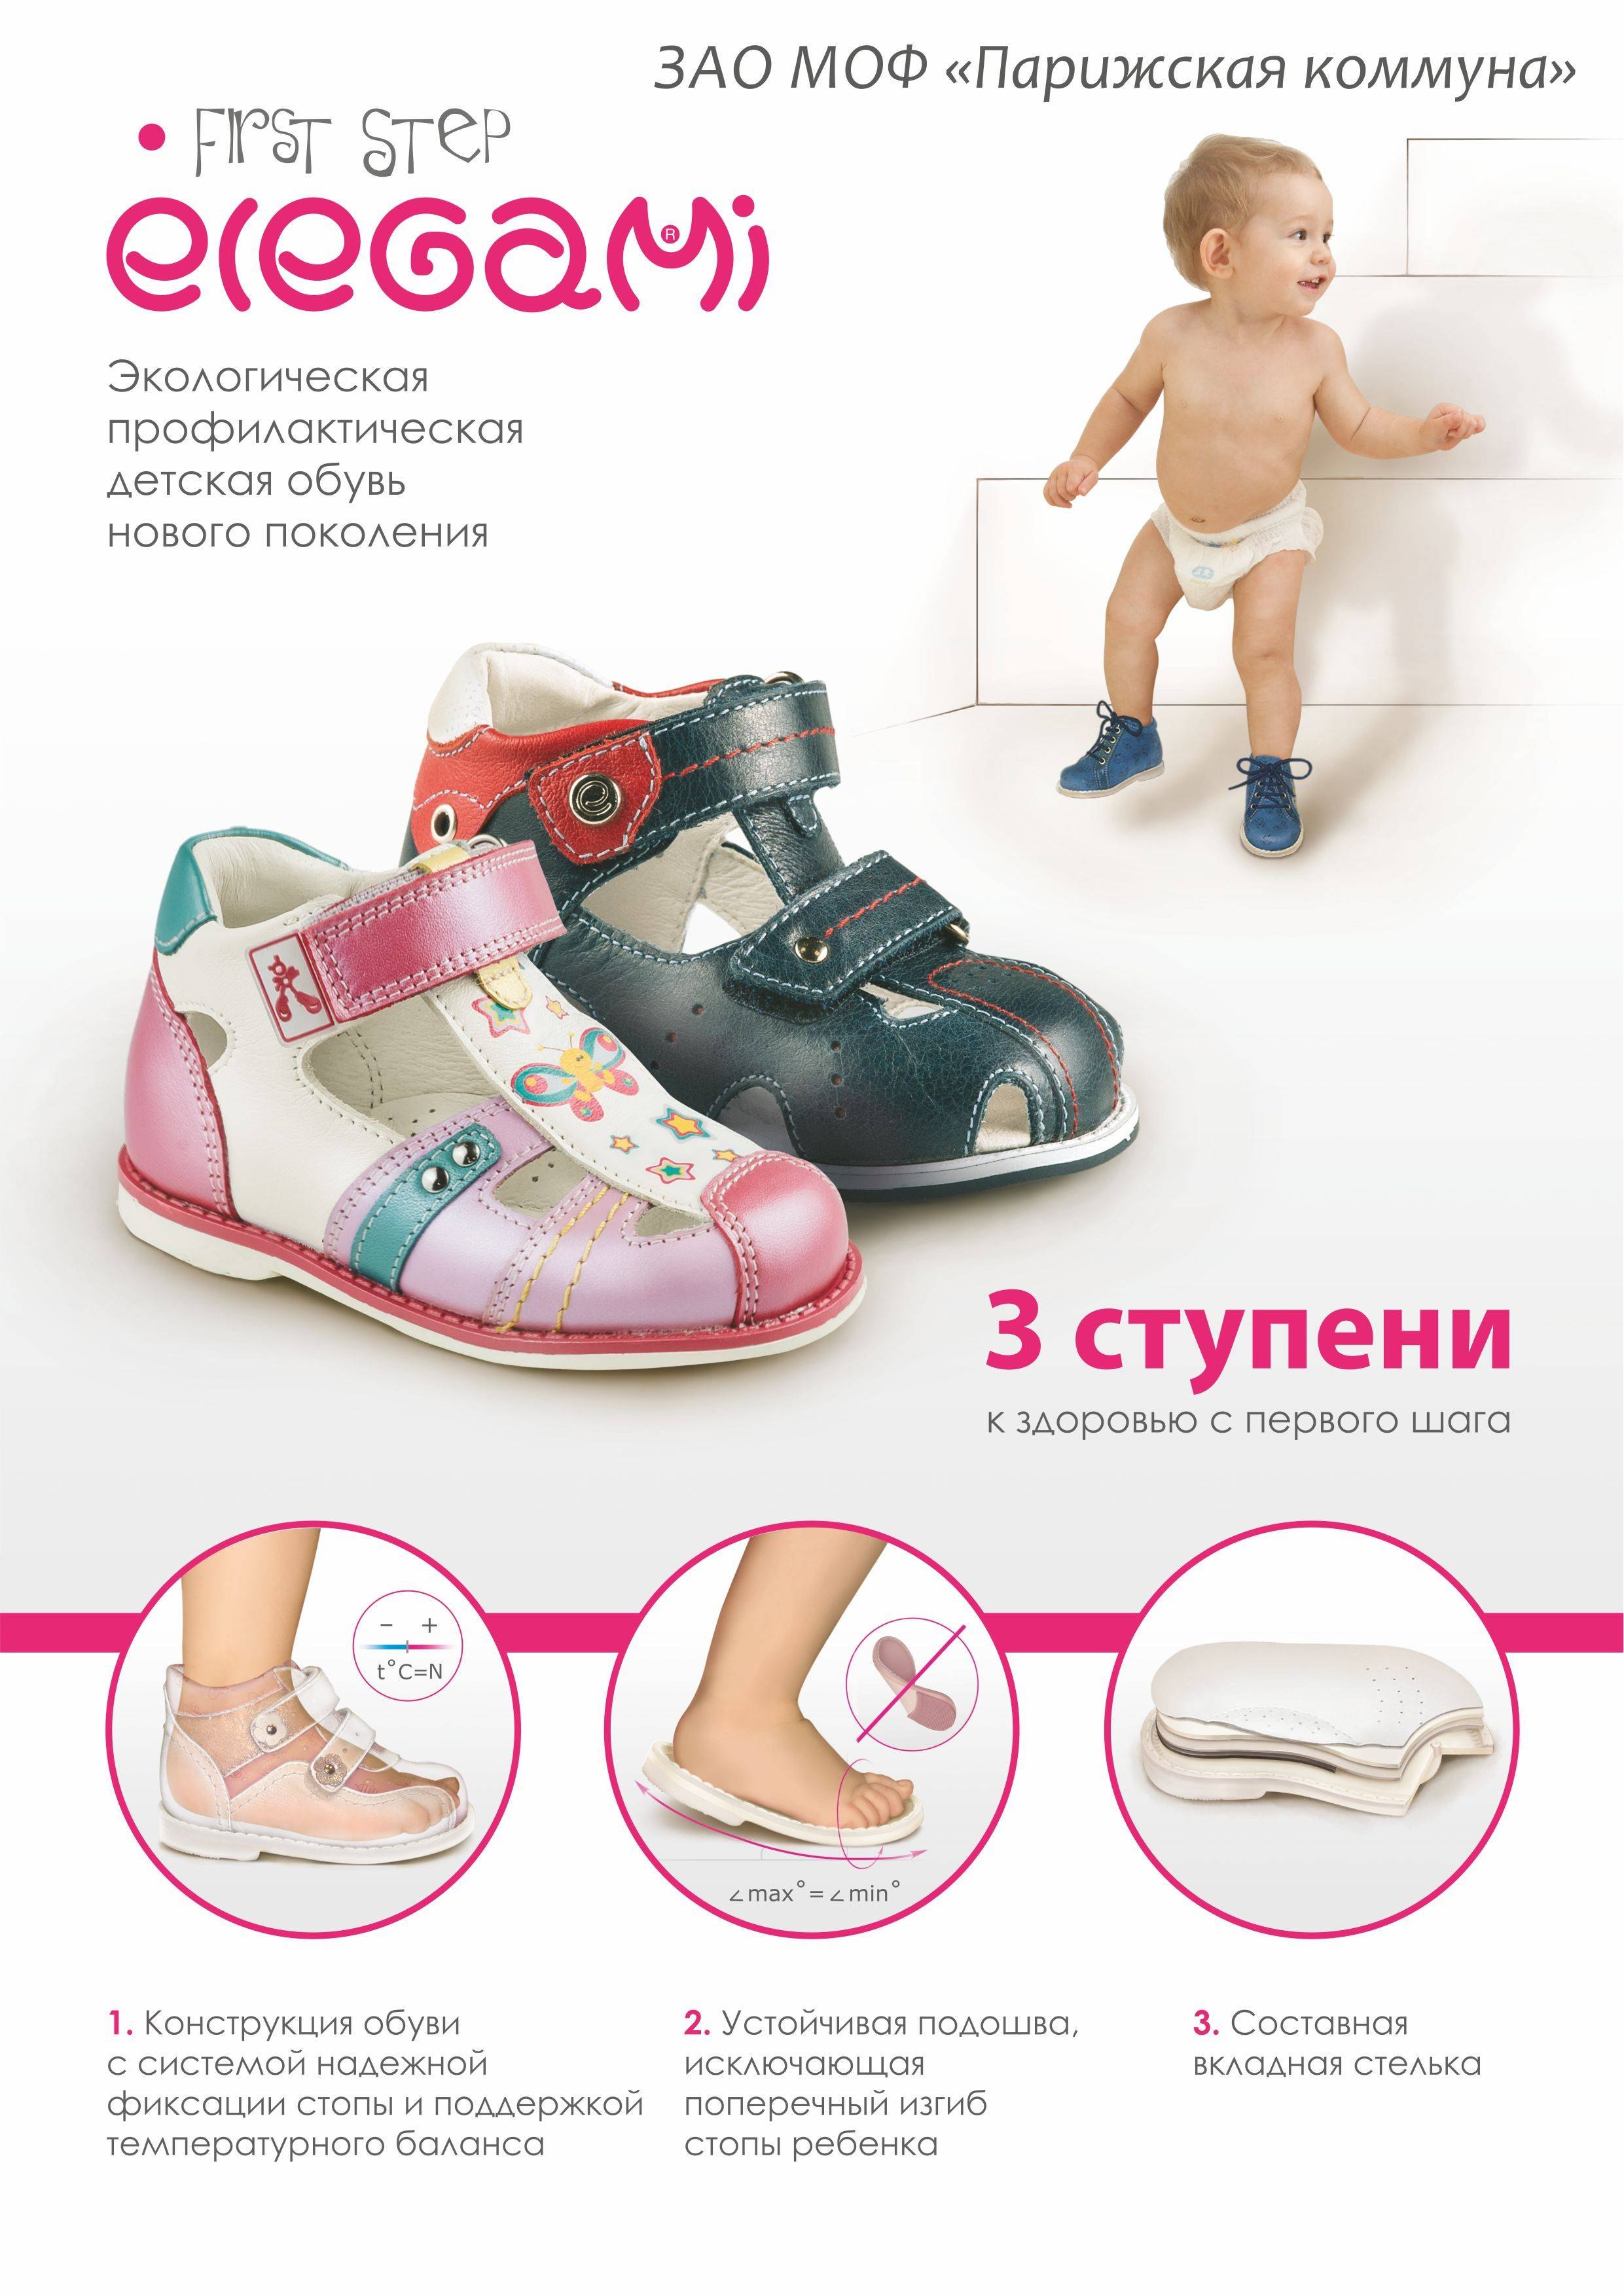 Обувь на первый шаг какие. Первая обувь для малыша. Правильная обувь для малышей. Правильная обувь для первых шагов. Правильная детская обувь для первых шагов.